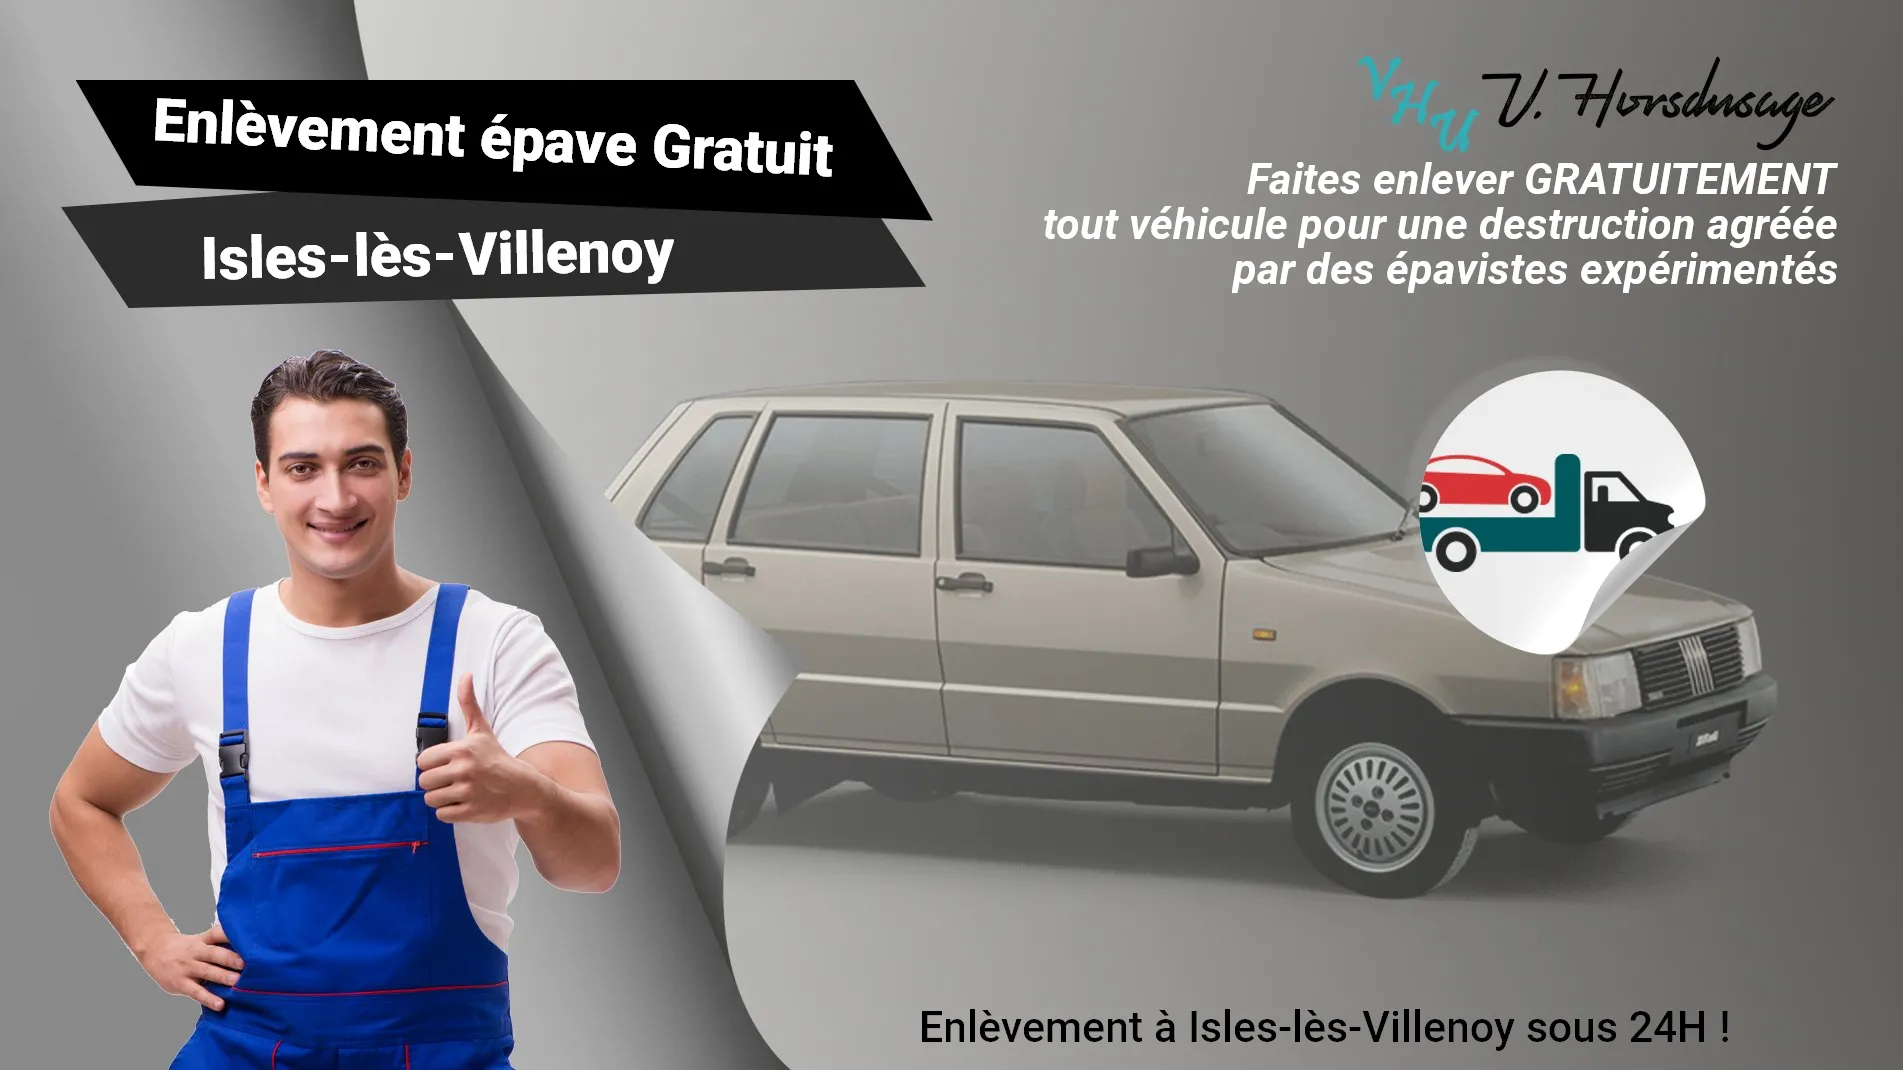 Pour un enlèvement gratuit à Isles-lès-Villenoy, contactez nos épavistes agréé VHU